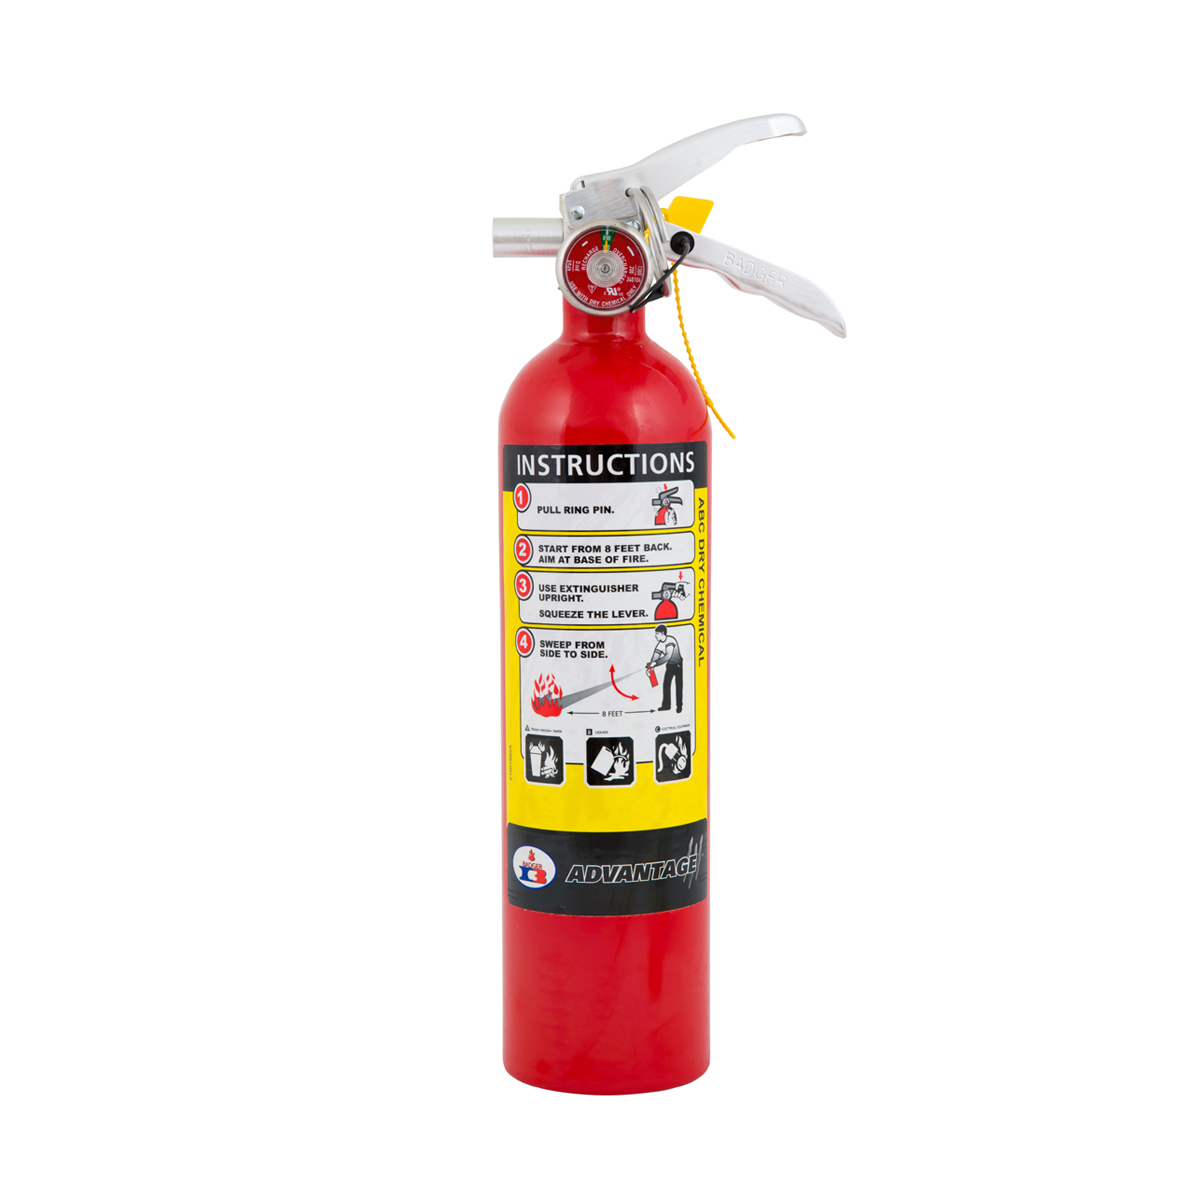 Badger Advantage Fire Extinguisher - 2.5 lb 1-A:10-B:C